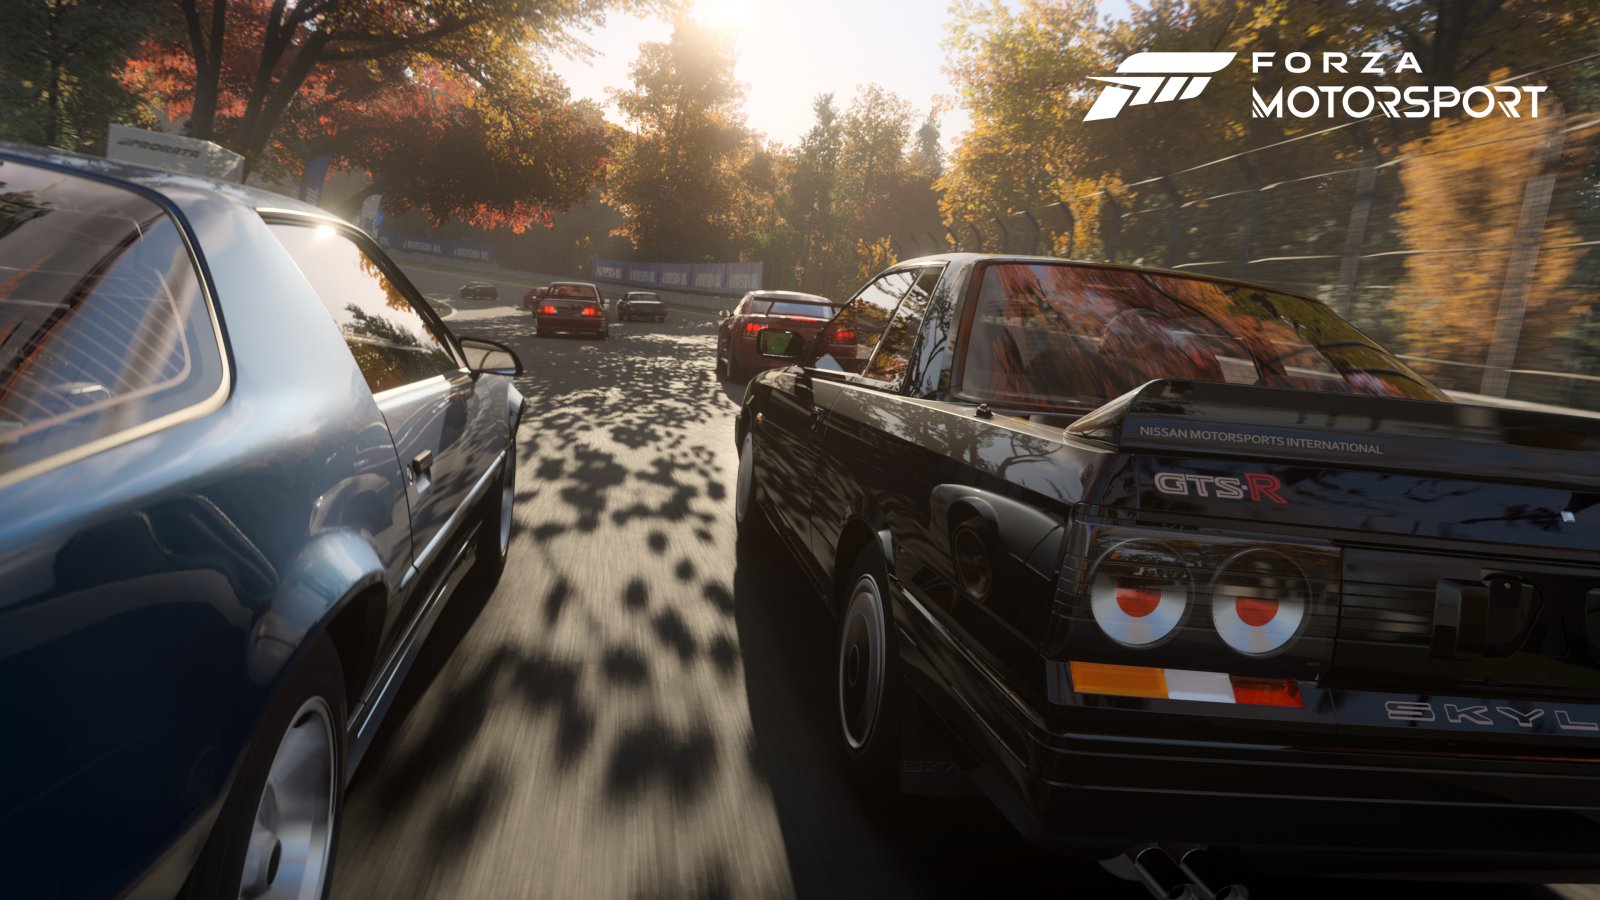 Forza Motorsport per PC, l'analisi di Digital Foundry: meglio di Xbox ma con qualche mancanza